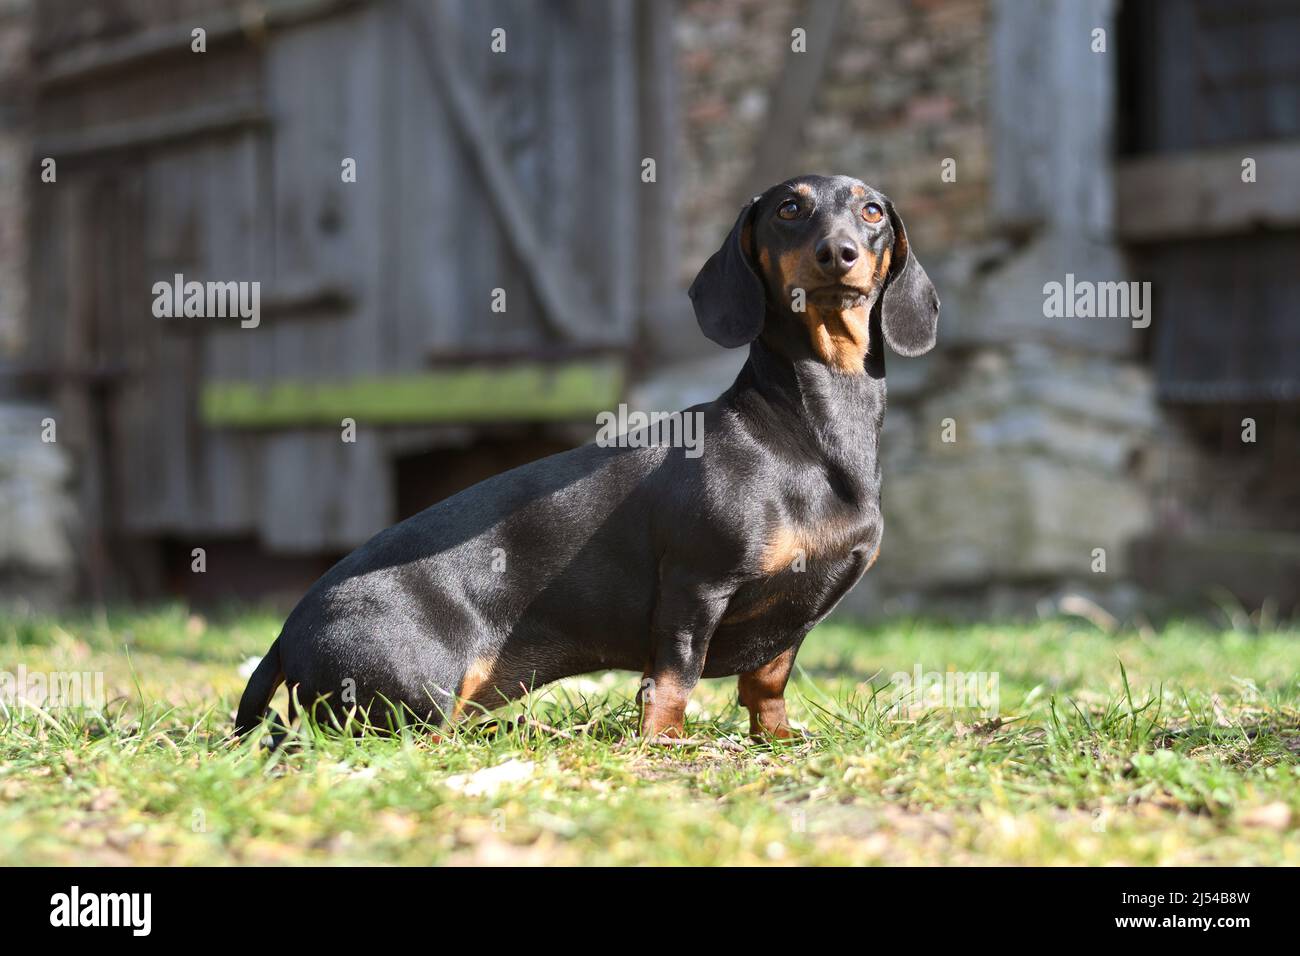 Kurzhaariger Dachshund, kurzhaariger Wursthund, Haushund (Canis lupus f. familiaris), sitzt vor einer alten Scheune, Deutschland, Norden Stockfoto